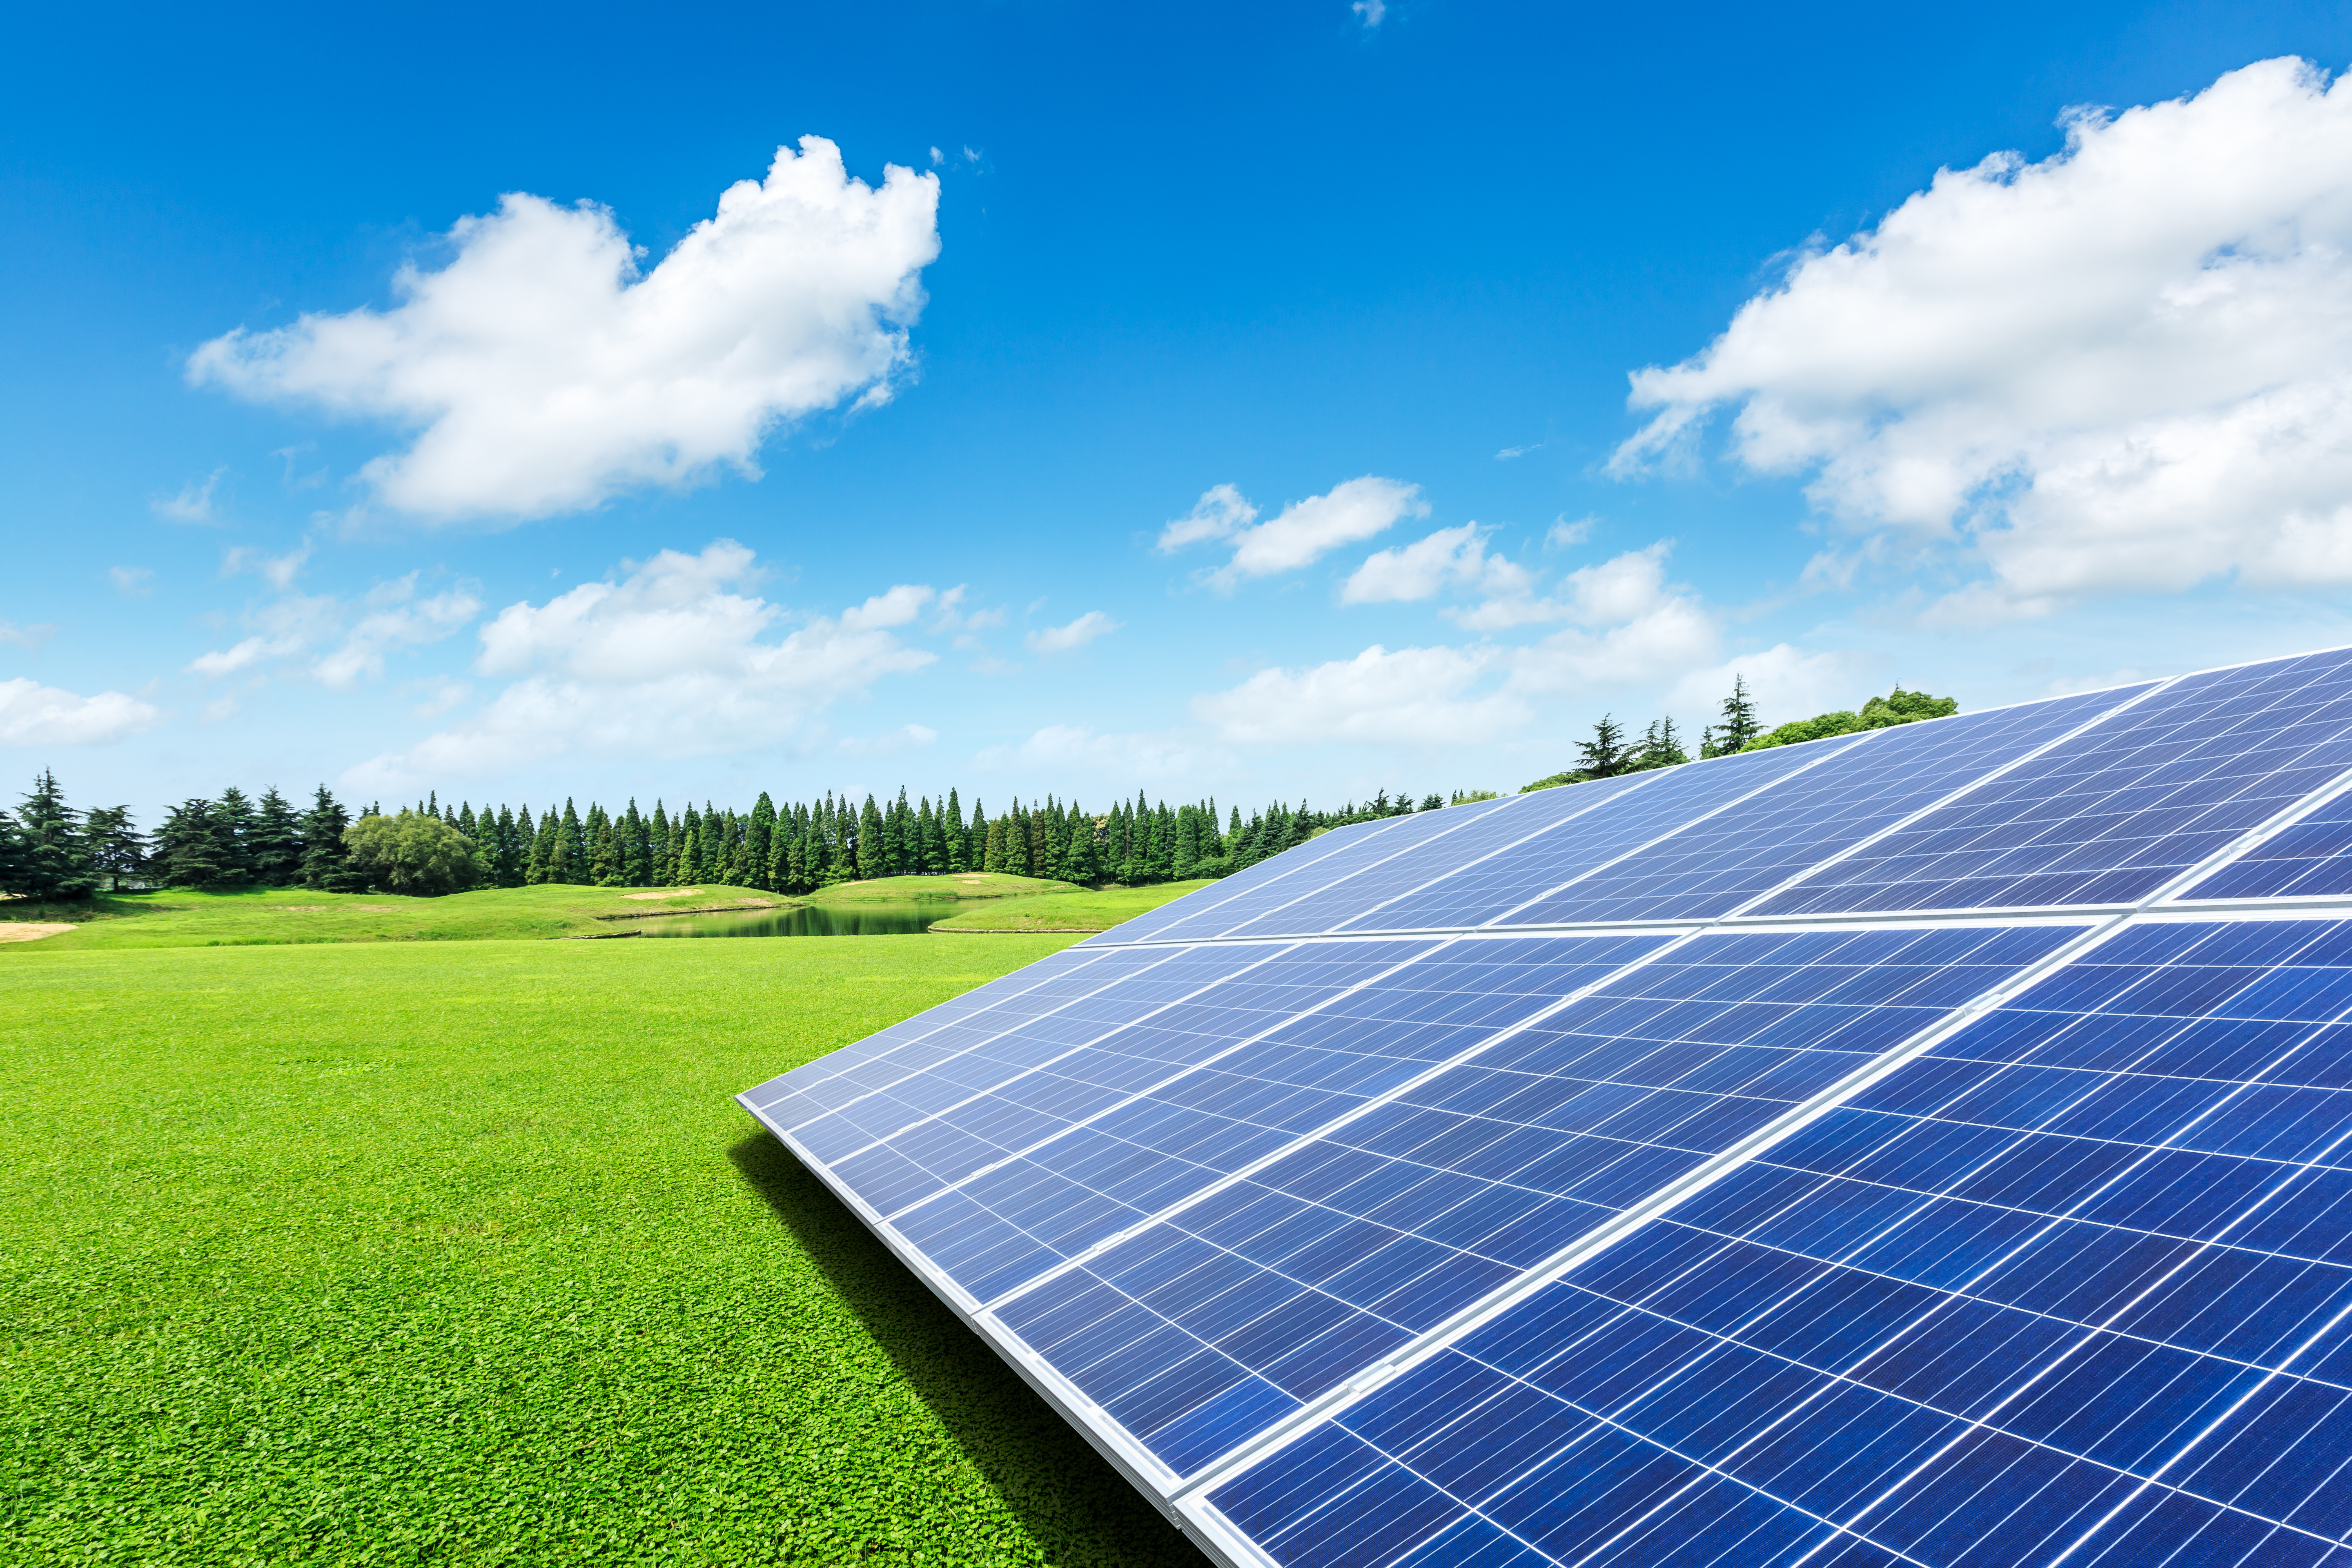  Tipos de generación de energía fotovoltaica